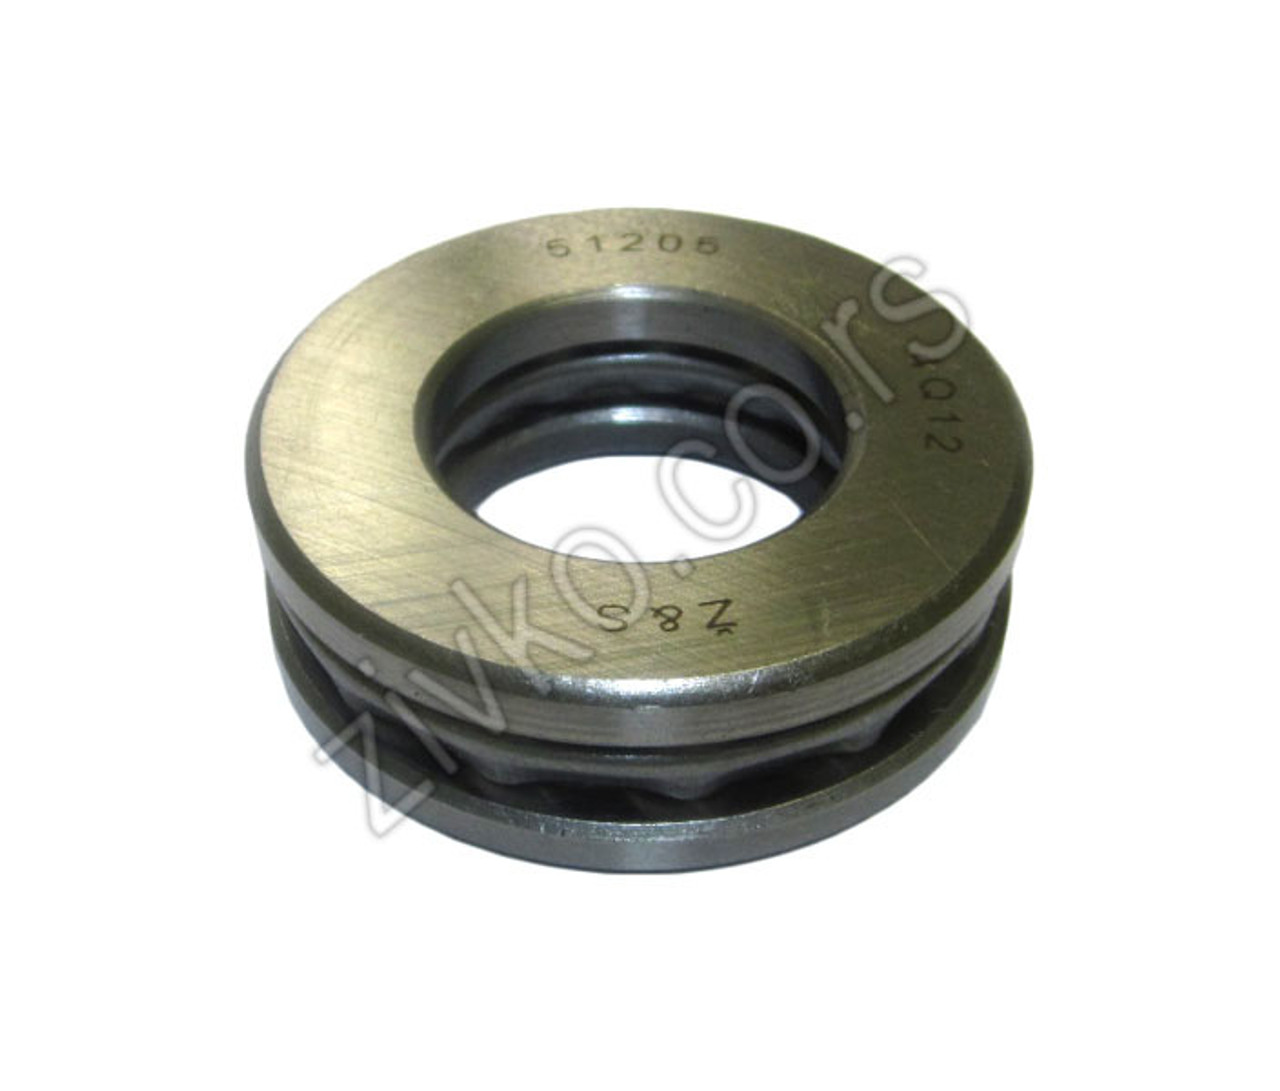 Axial bearing 51205 - 1